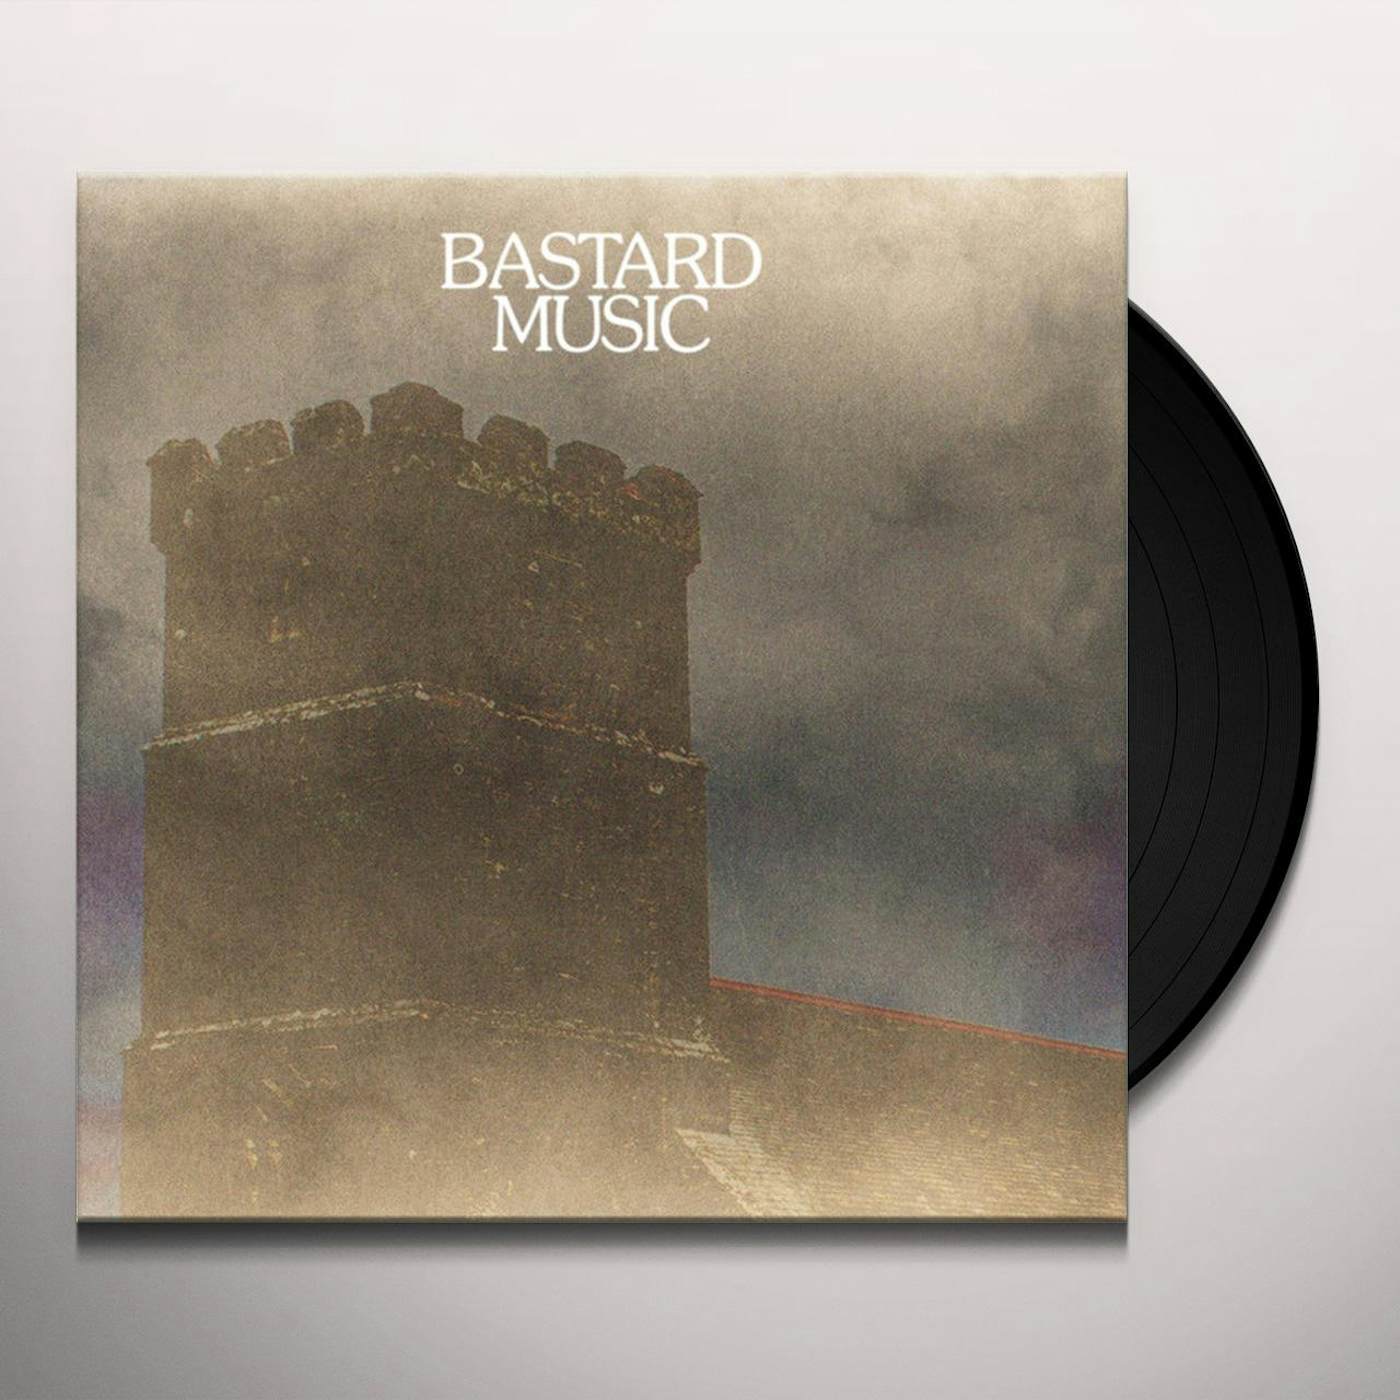 Meatraffle Bastard Music Vinyl Record